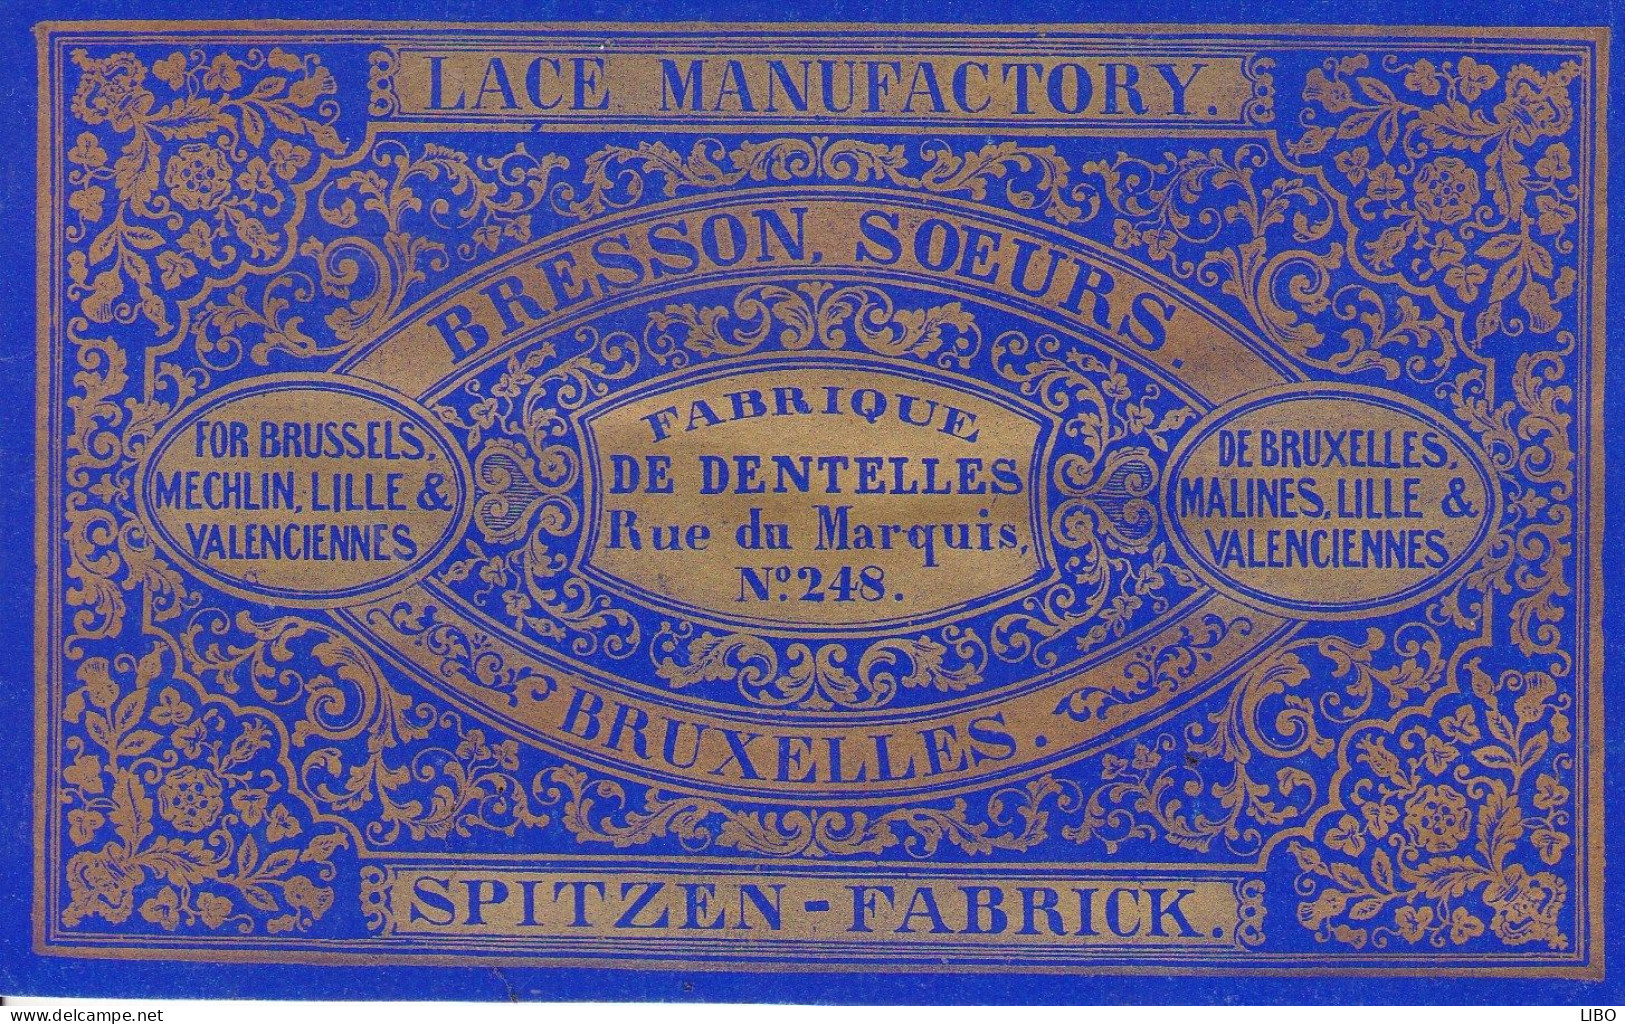 Fabrique De Dentelles SPITZEN-FABRICK BRESSON Soeurs Bruxelles Rue Du Marquis BRUXELLES LILLE VALENCIENNES C. 1860 - Visiting Cards